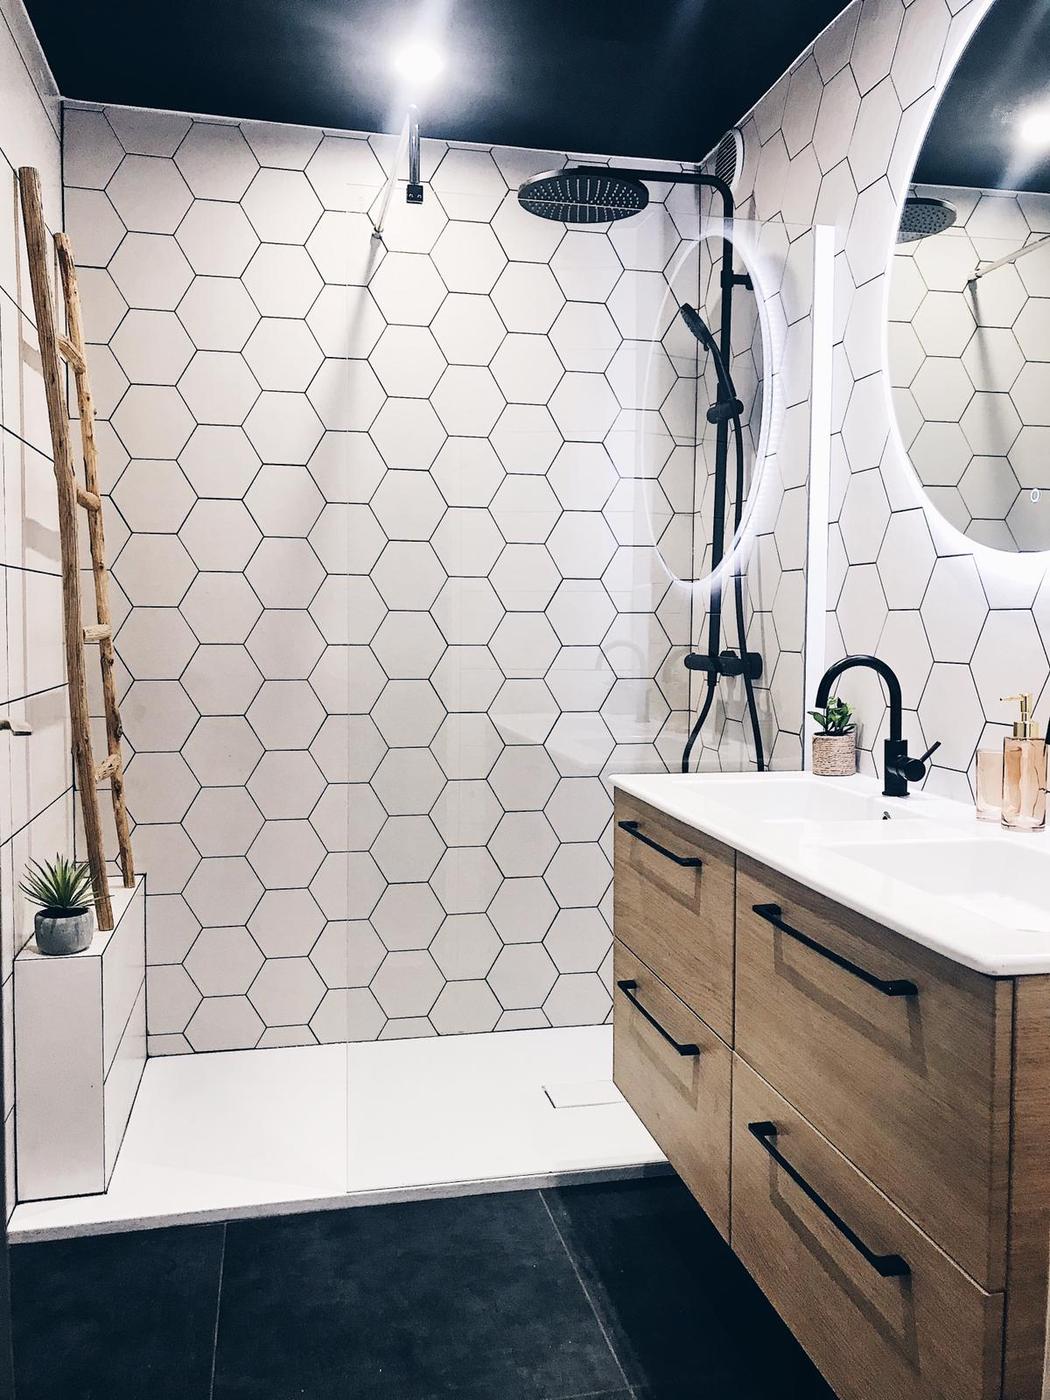 Carrelage Pierre Blanc hexagonal 17.5x20 cm dans une salle de bain moderne avec meuble en bois et détails noirs